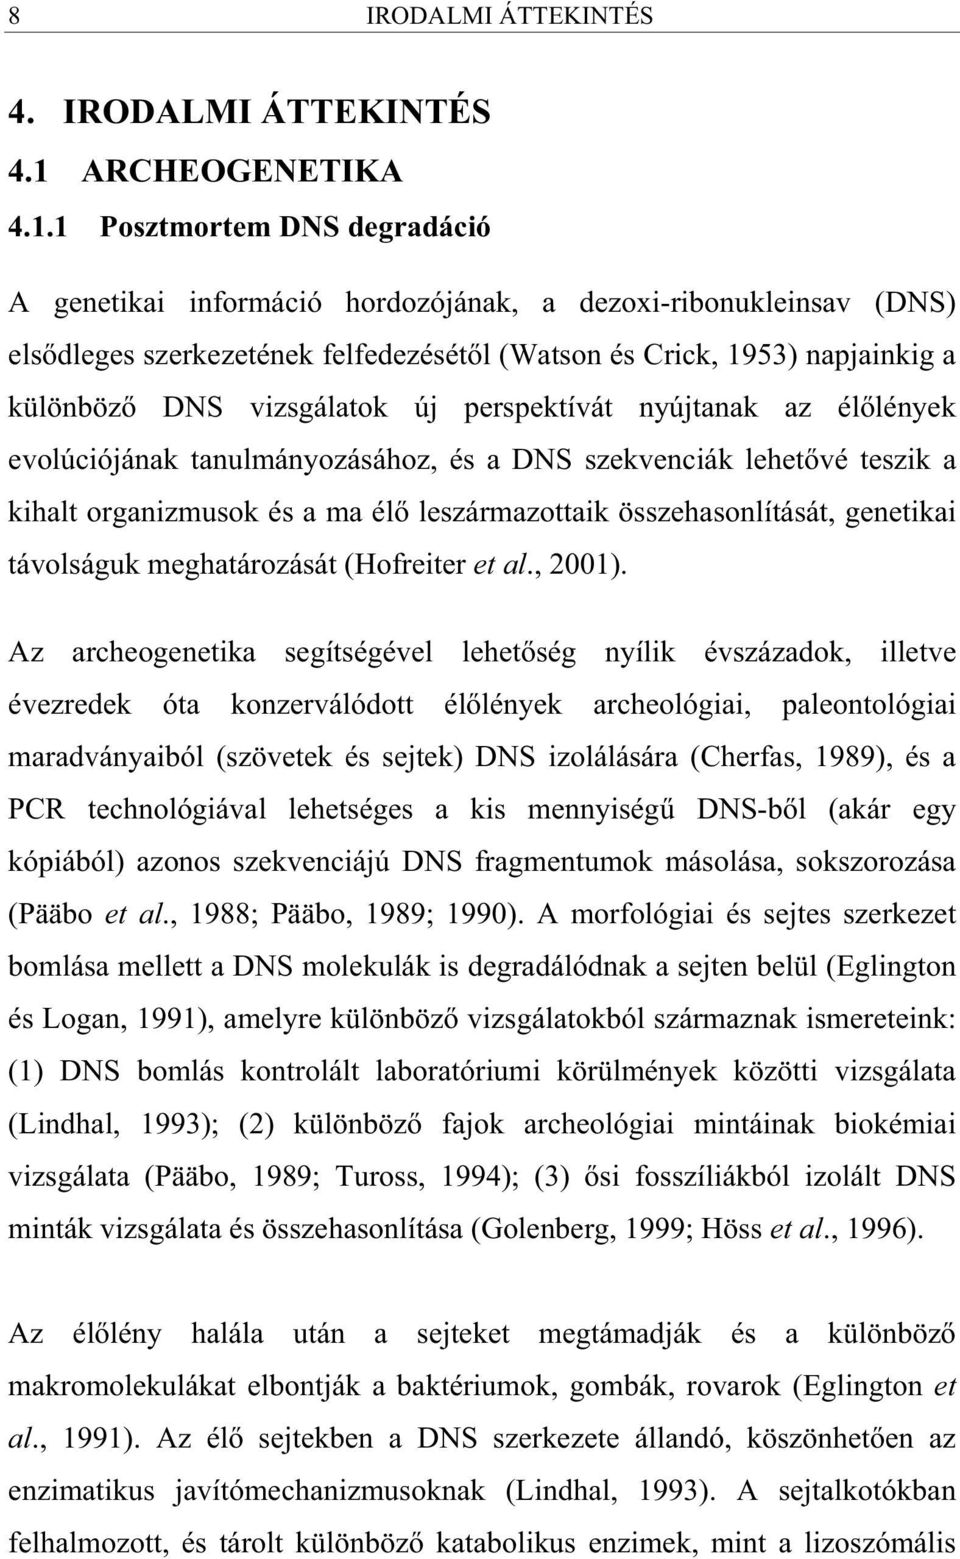 1 Posztmortem DNS degradáció A genetikai információ hordozójának, a dezoxi-ribonukleinsav (DNS) els dleges szerkezetének felfedezését l (Watson és Crick, 1953) napjainkig a különböz DNS vizsgálatok